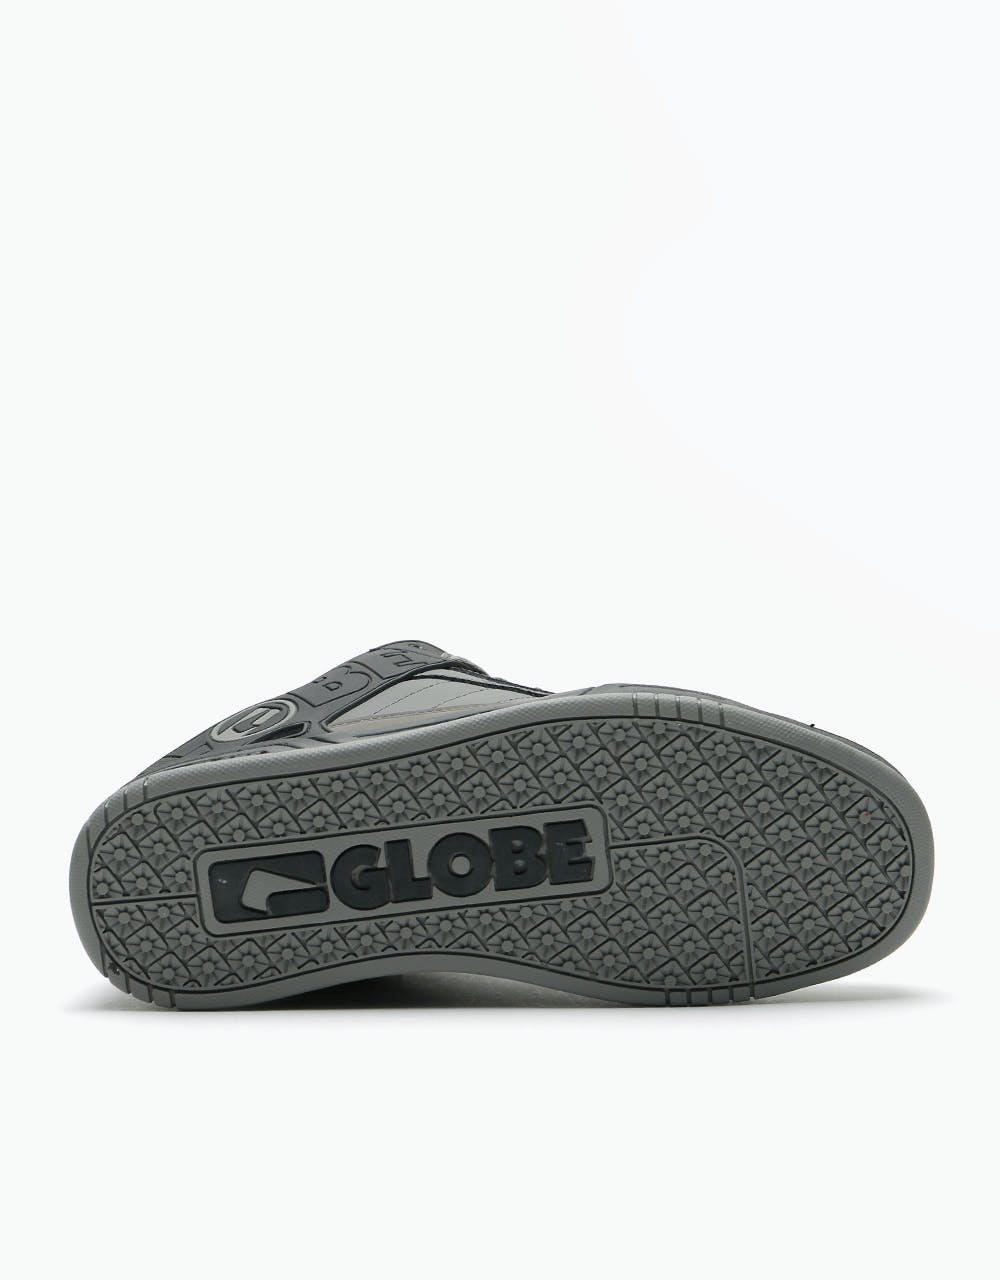 Globe Tilt Skate Shoes - Black/Charcoal Split